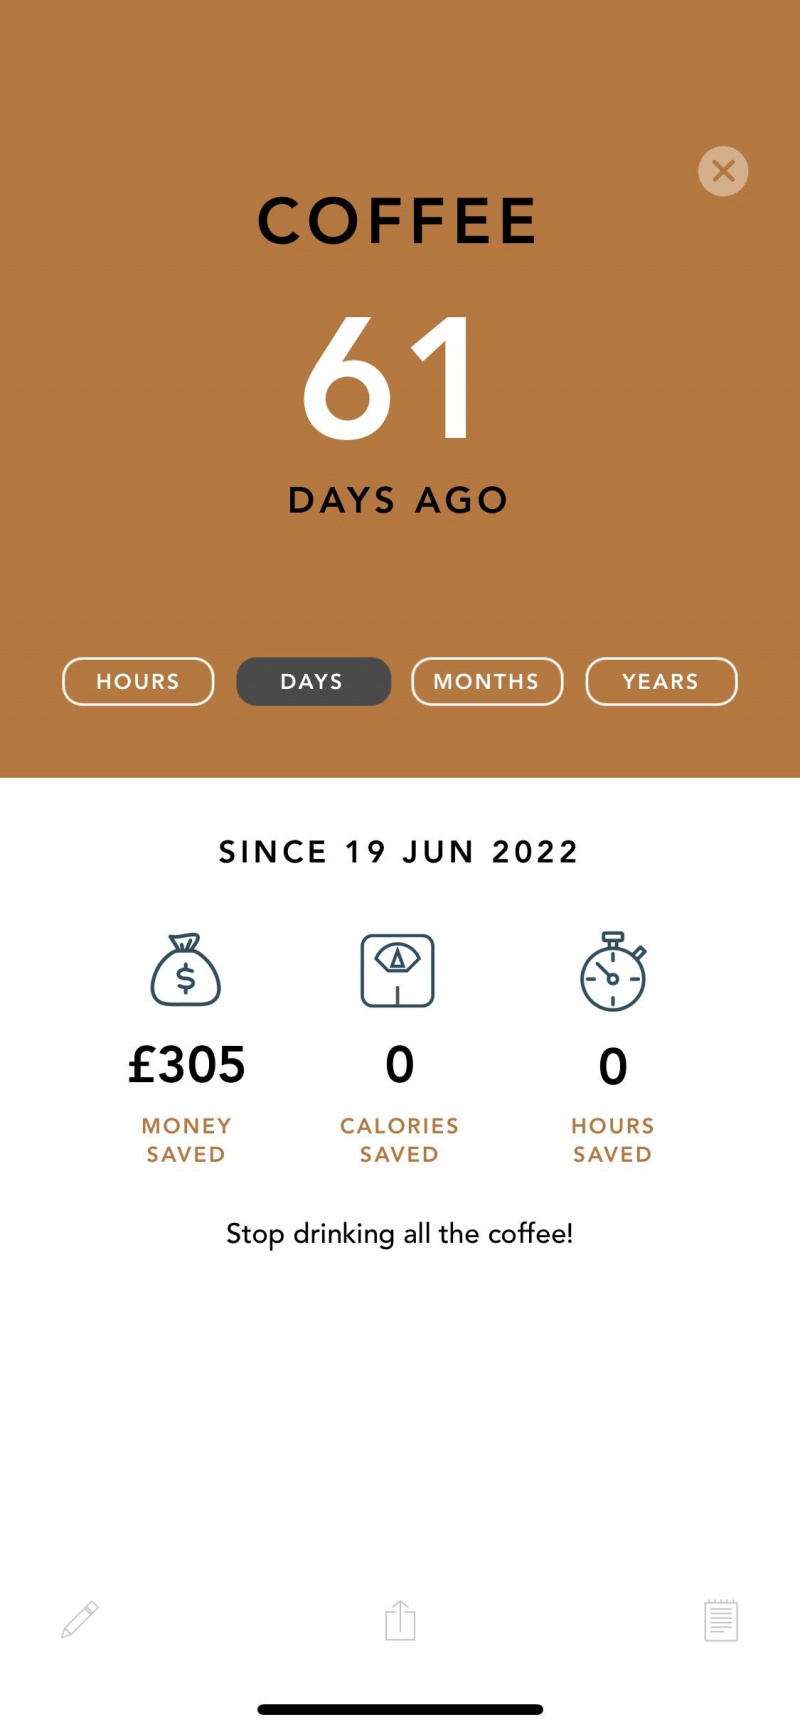   Skärmdump av senaste app som visar sparade pengar